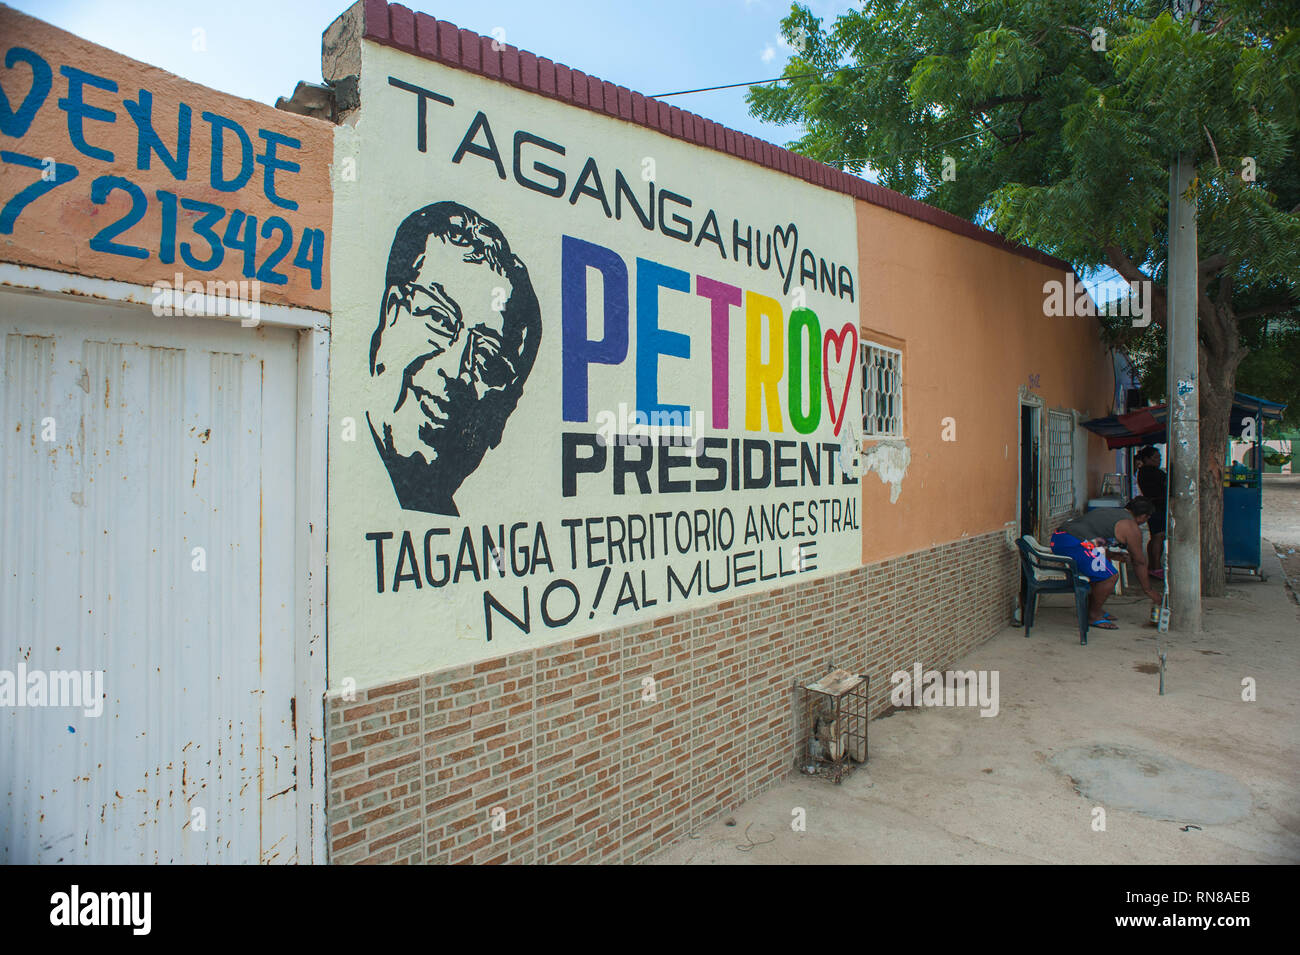 Taganga, Santa Marta, Colombia: Petro president political campaign. Stock Photo